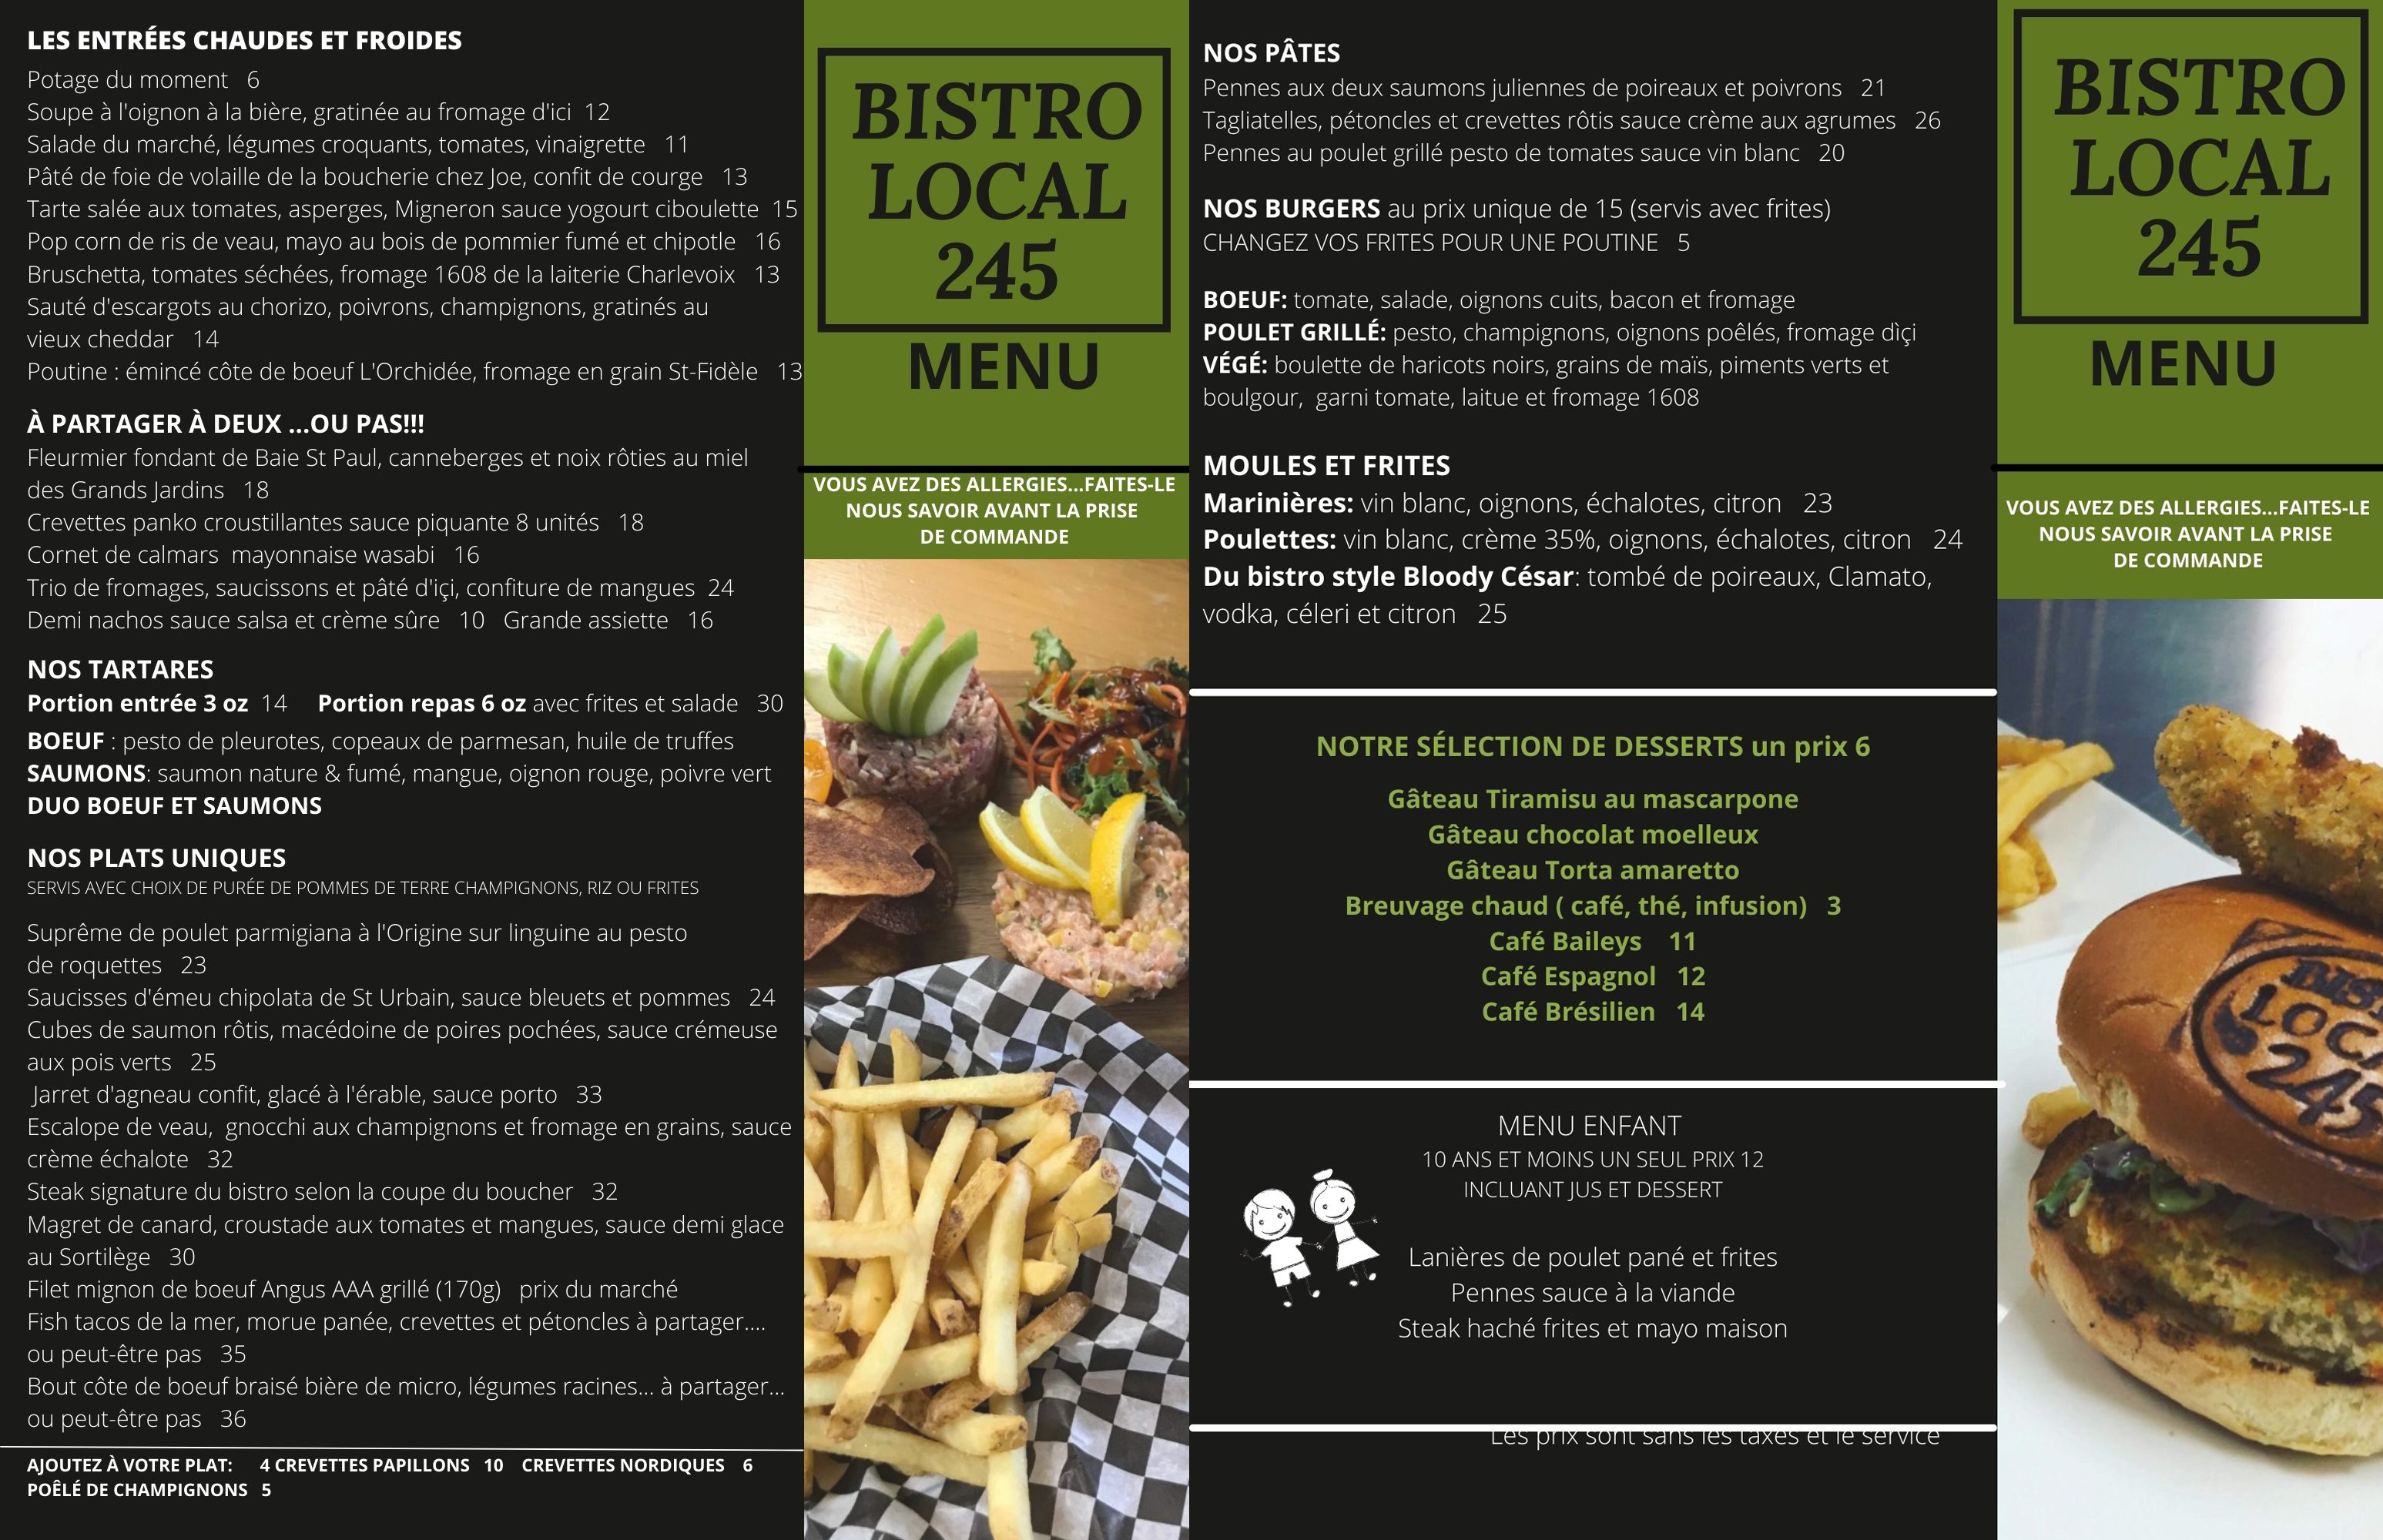 Le Bistro Local 245 et son succulent menu en décembre…